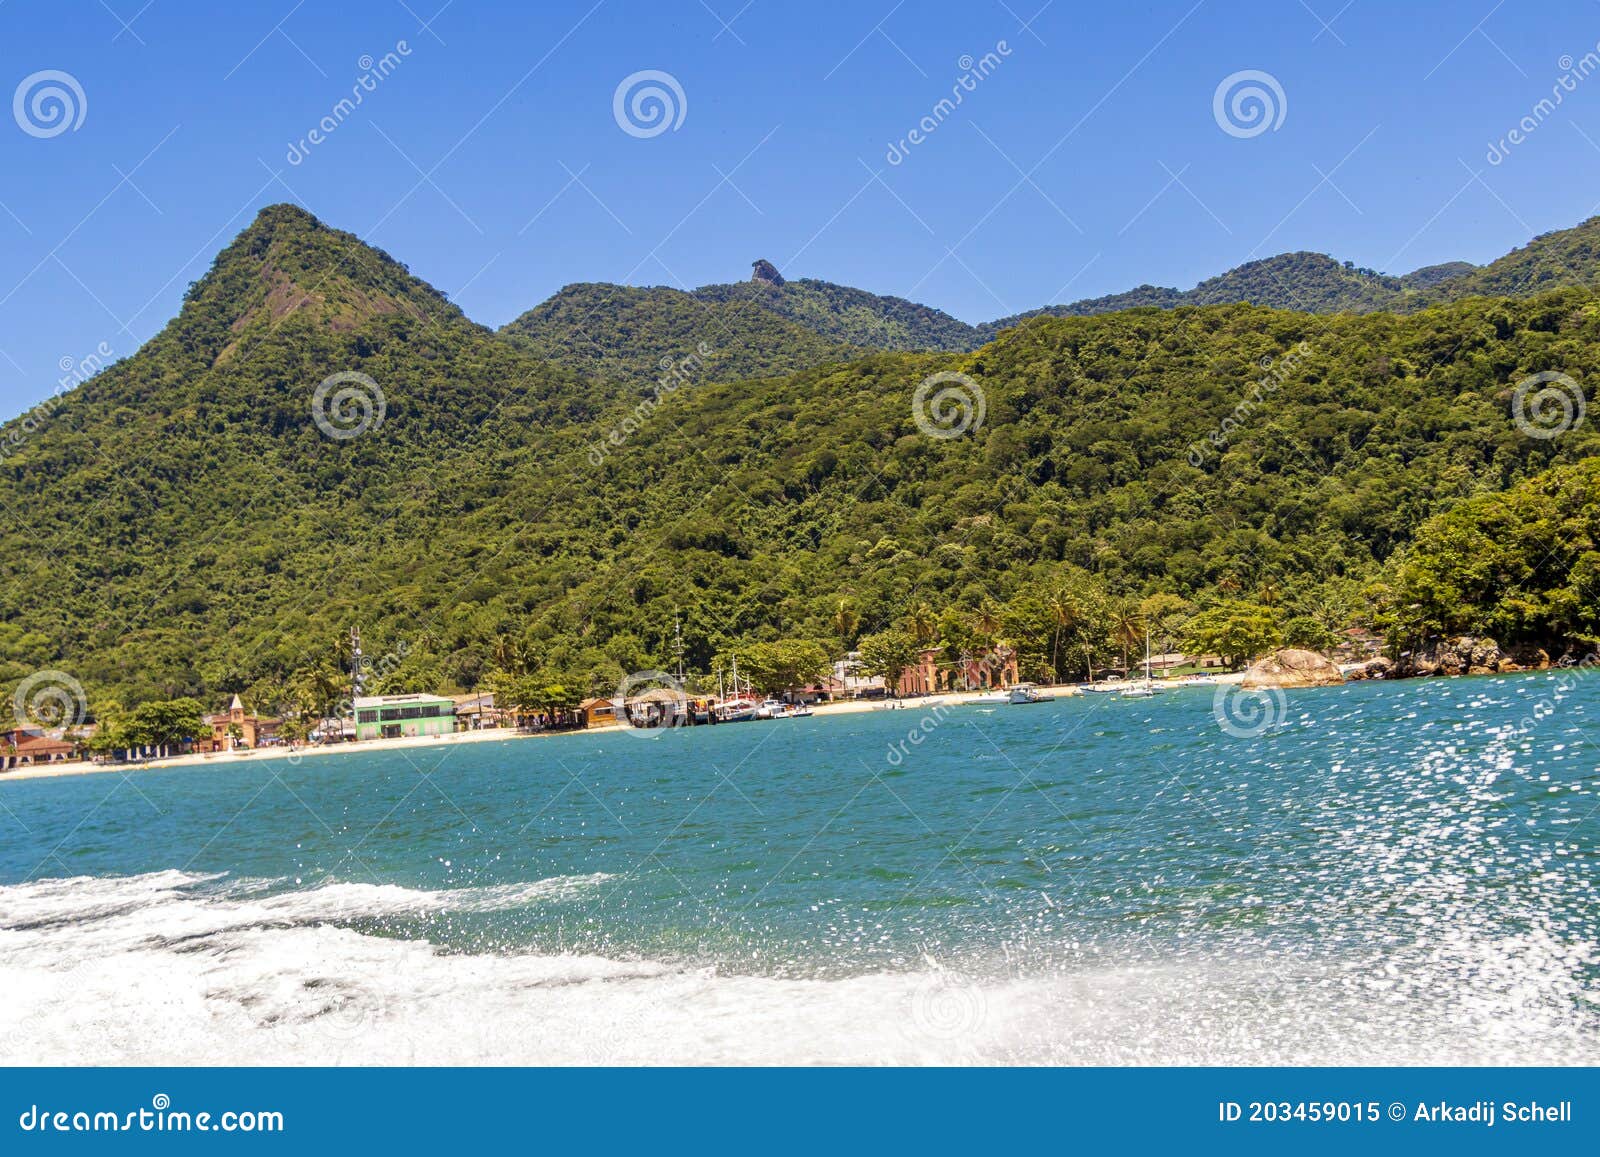 boat trip abraÃÂ£o beach pico do papagaio. ilha grande, brazil